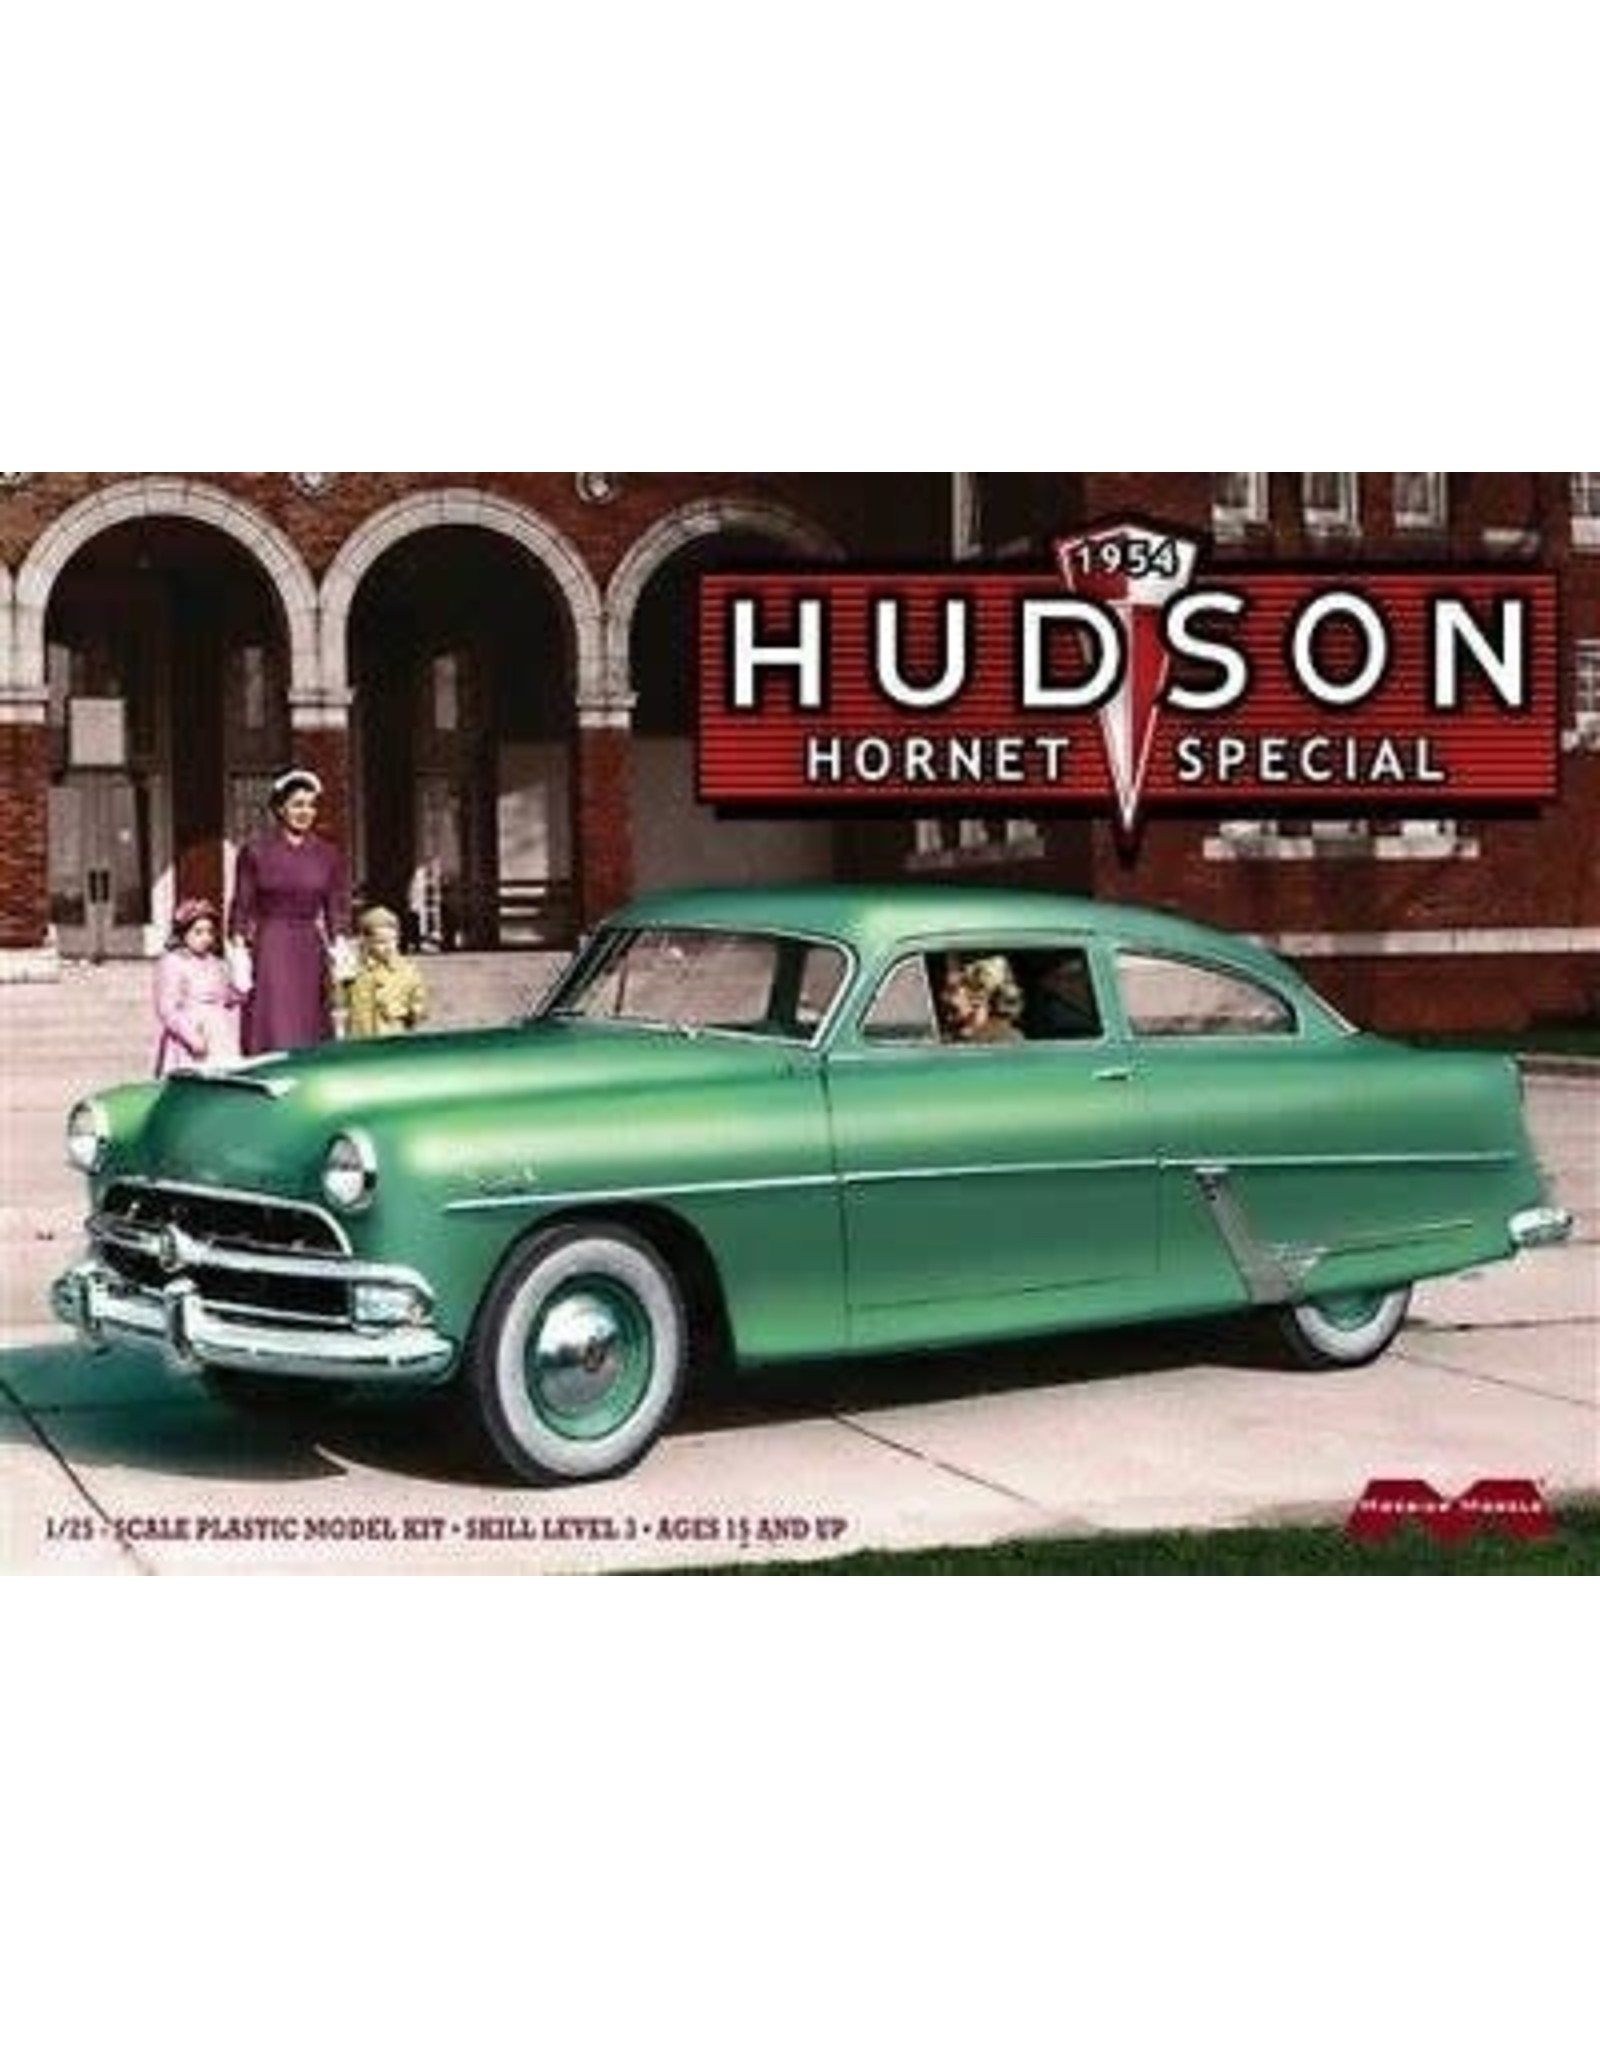 Moebius 1954 Hudson hornet special